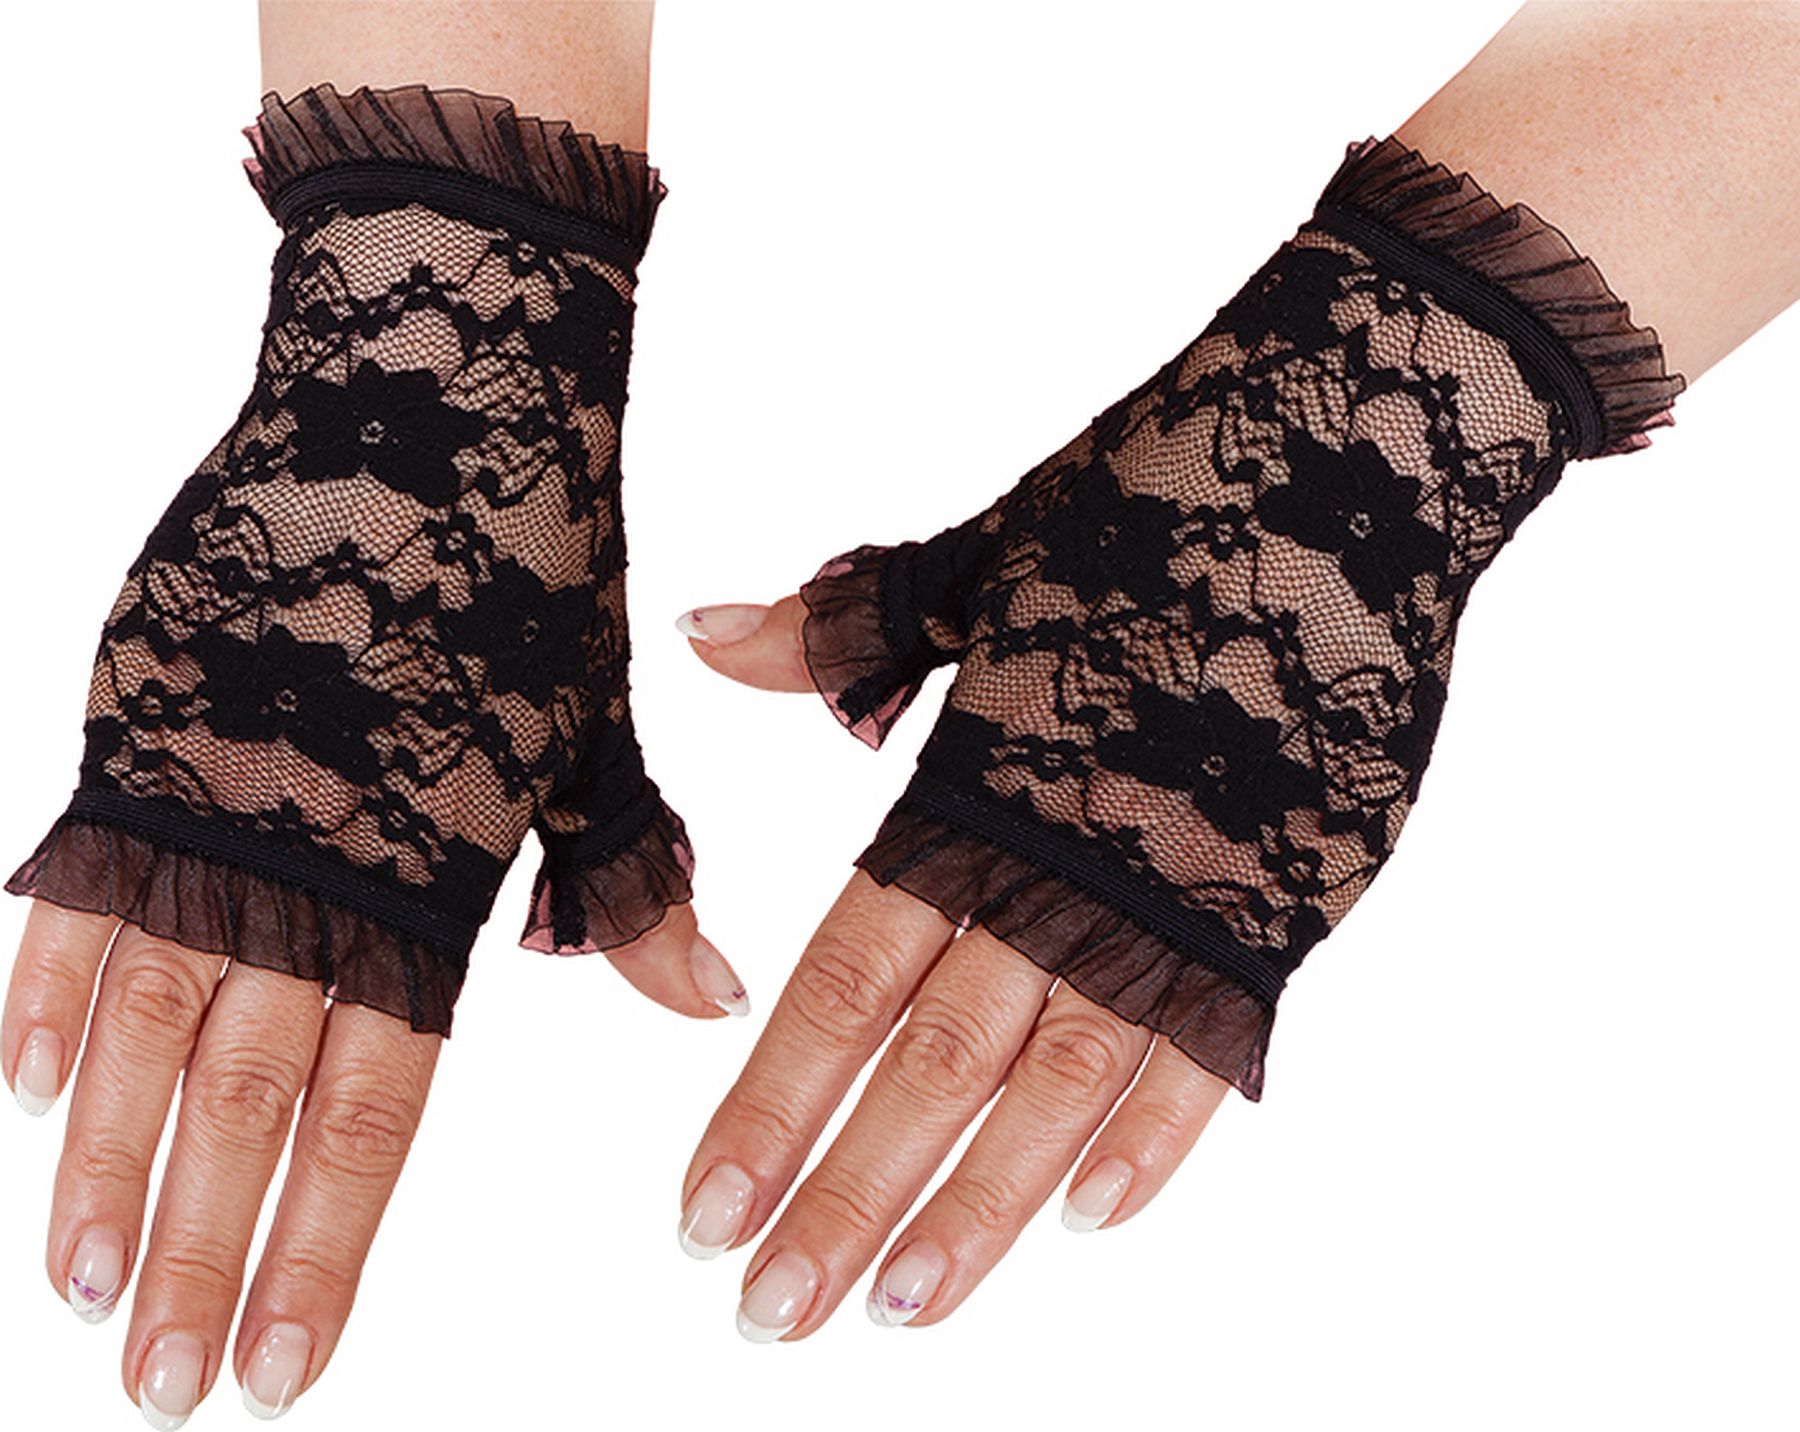 Lace gloves fingerless, black